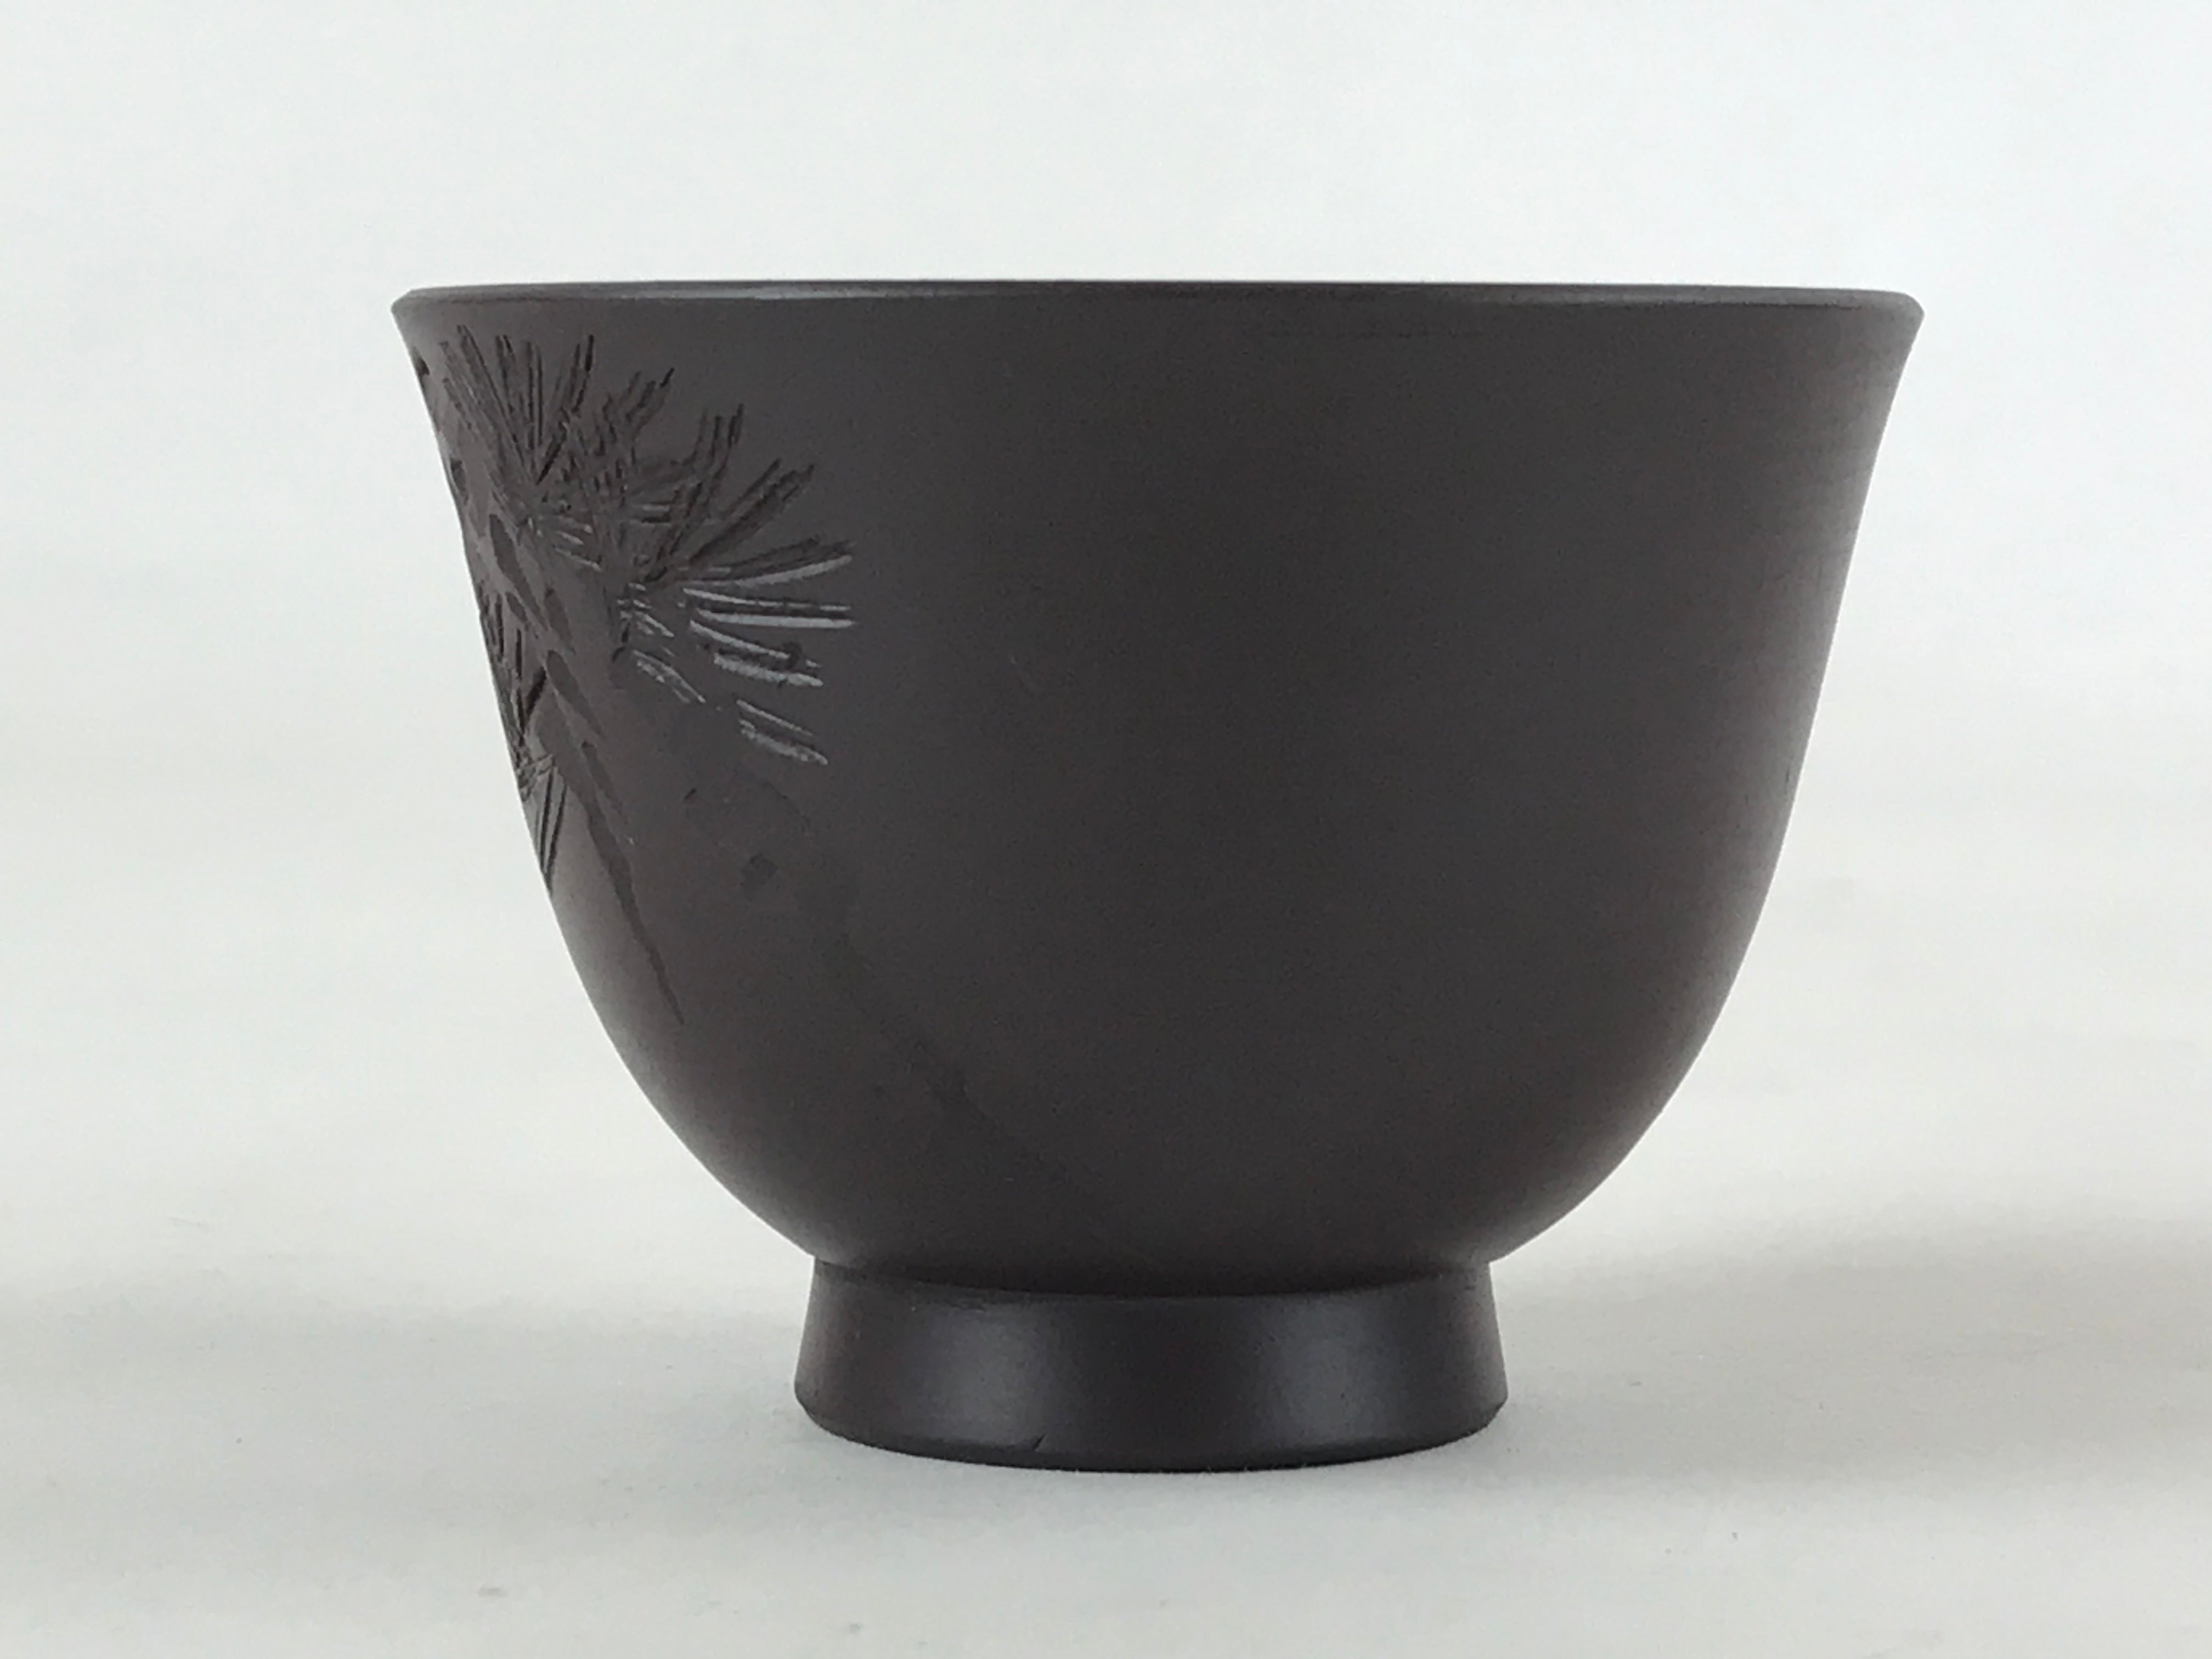 Japanese Ceramic Sake Cup Vtg Engraved Pine Tree Brown White Guinomi G105